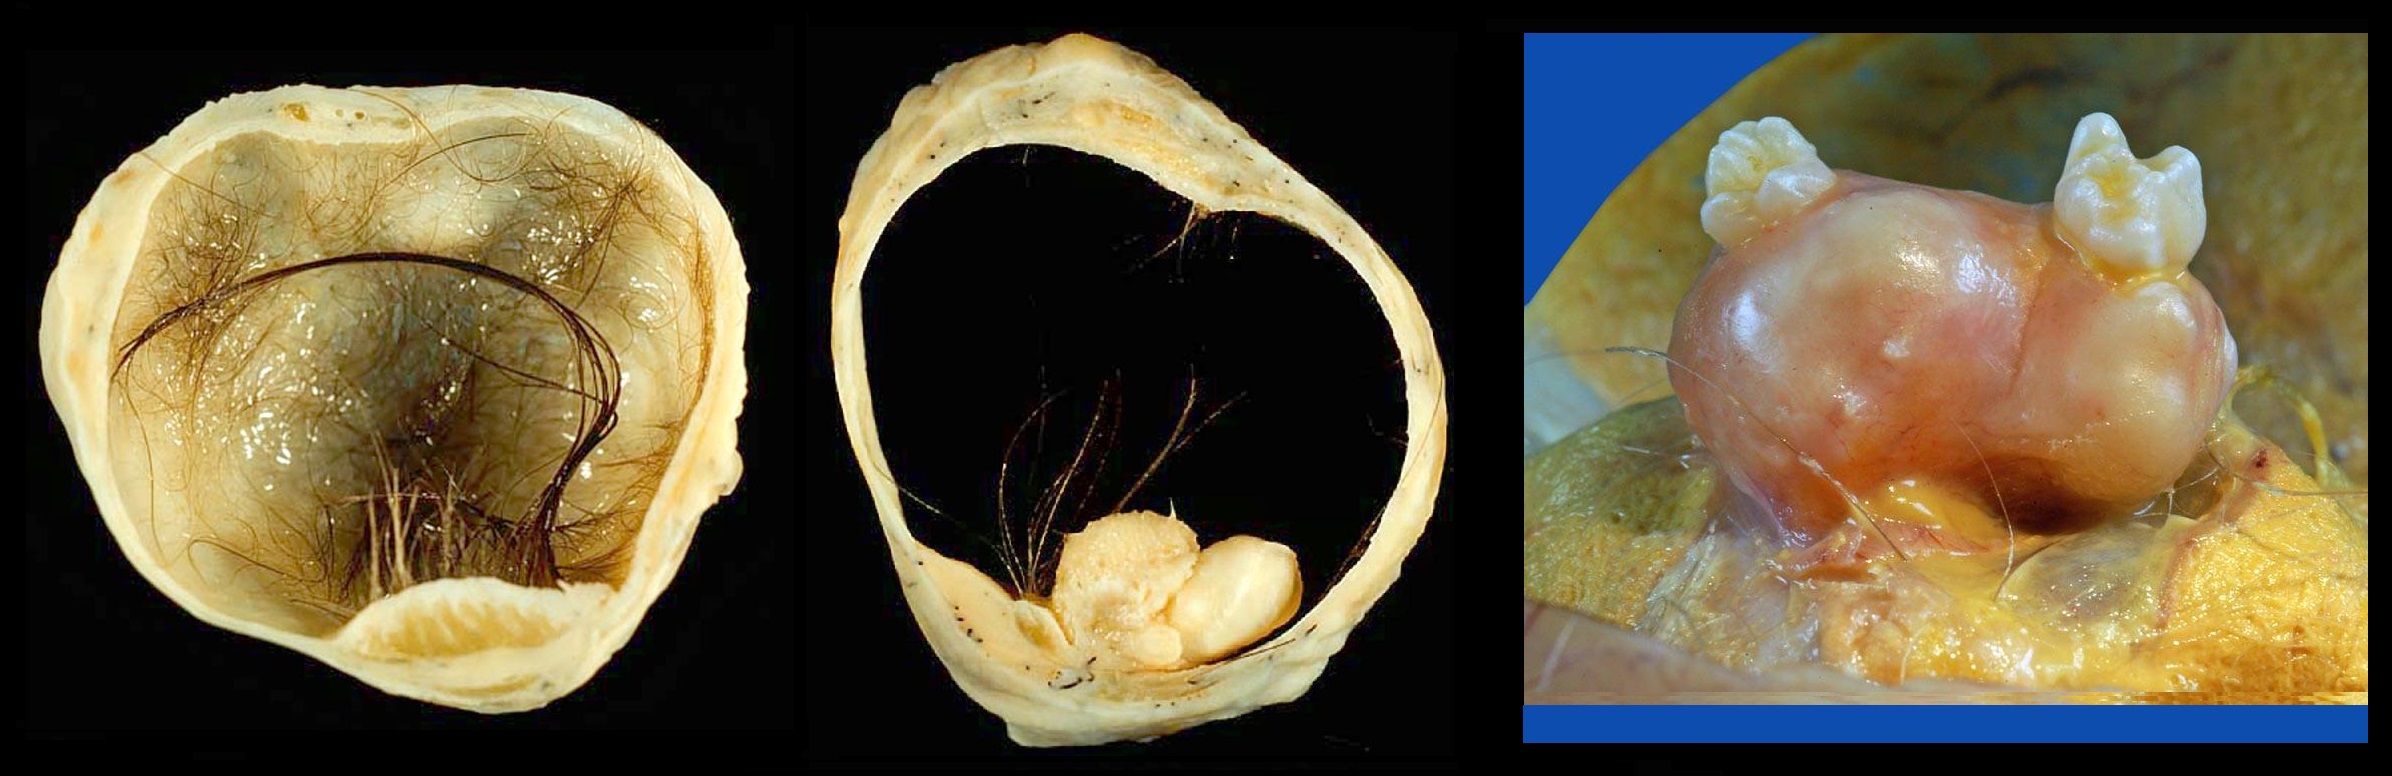 Эндометриоз киста яичника фото узи thumbnail